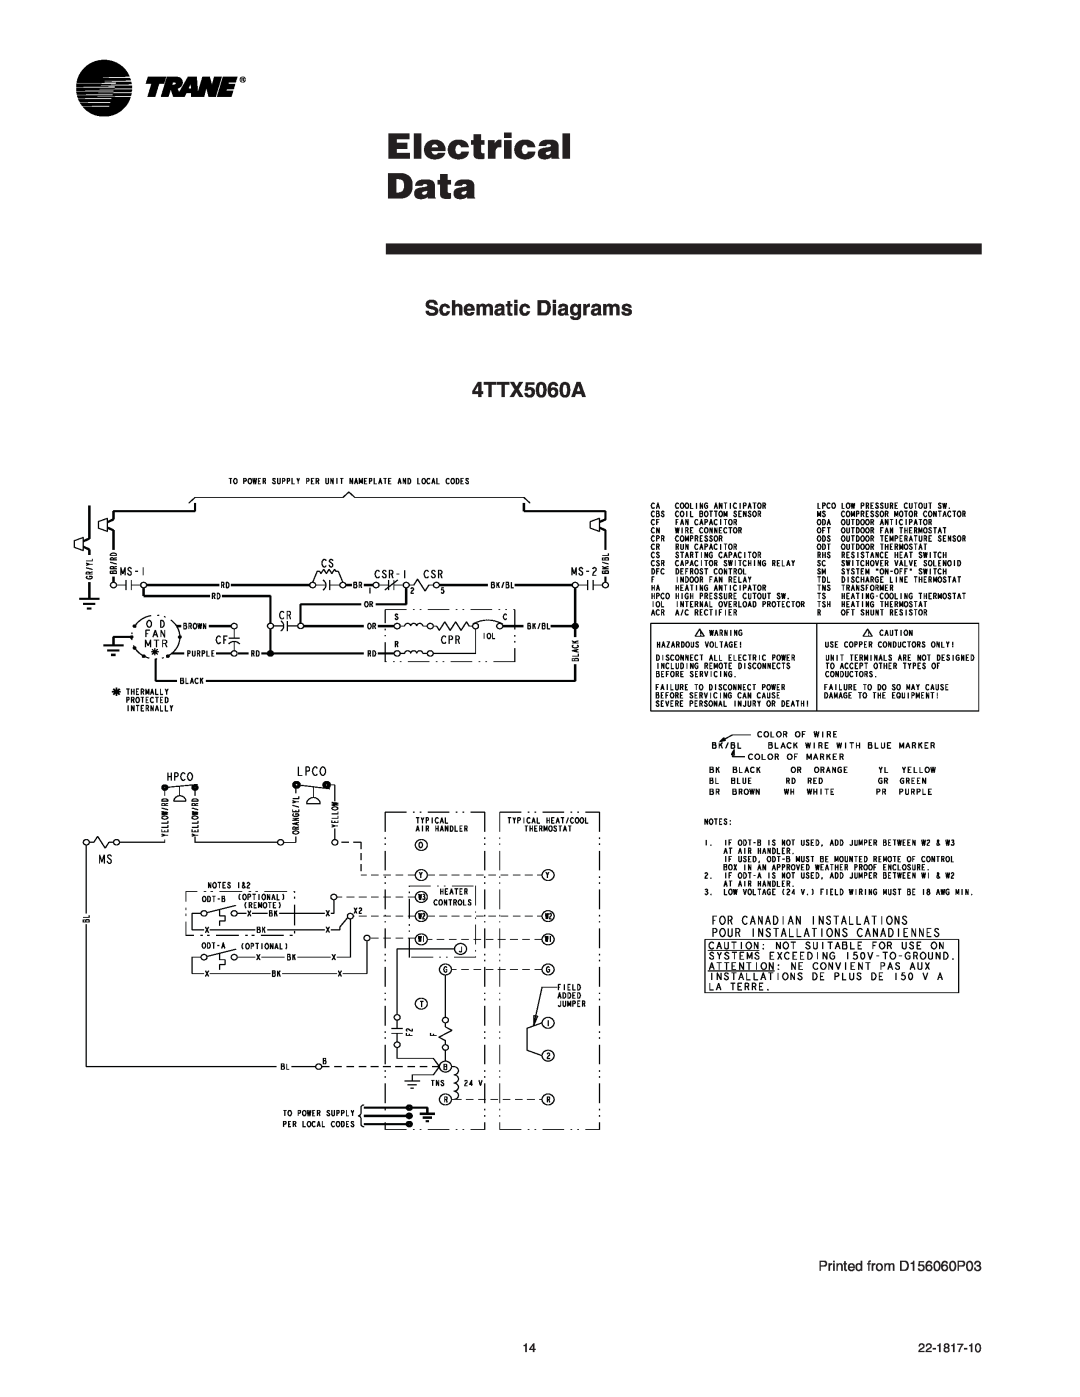 Trane 4TTX5042A1, 4TTX5061E, 4TTX5060A1, 4TTX5036A1 Electrical Data, Schematic Diagrams 4TTX5060A, Printed from D156060P03 